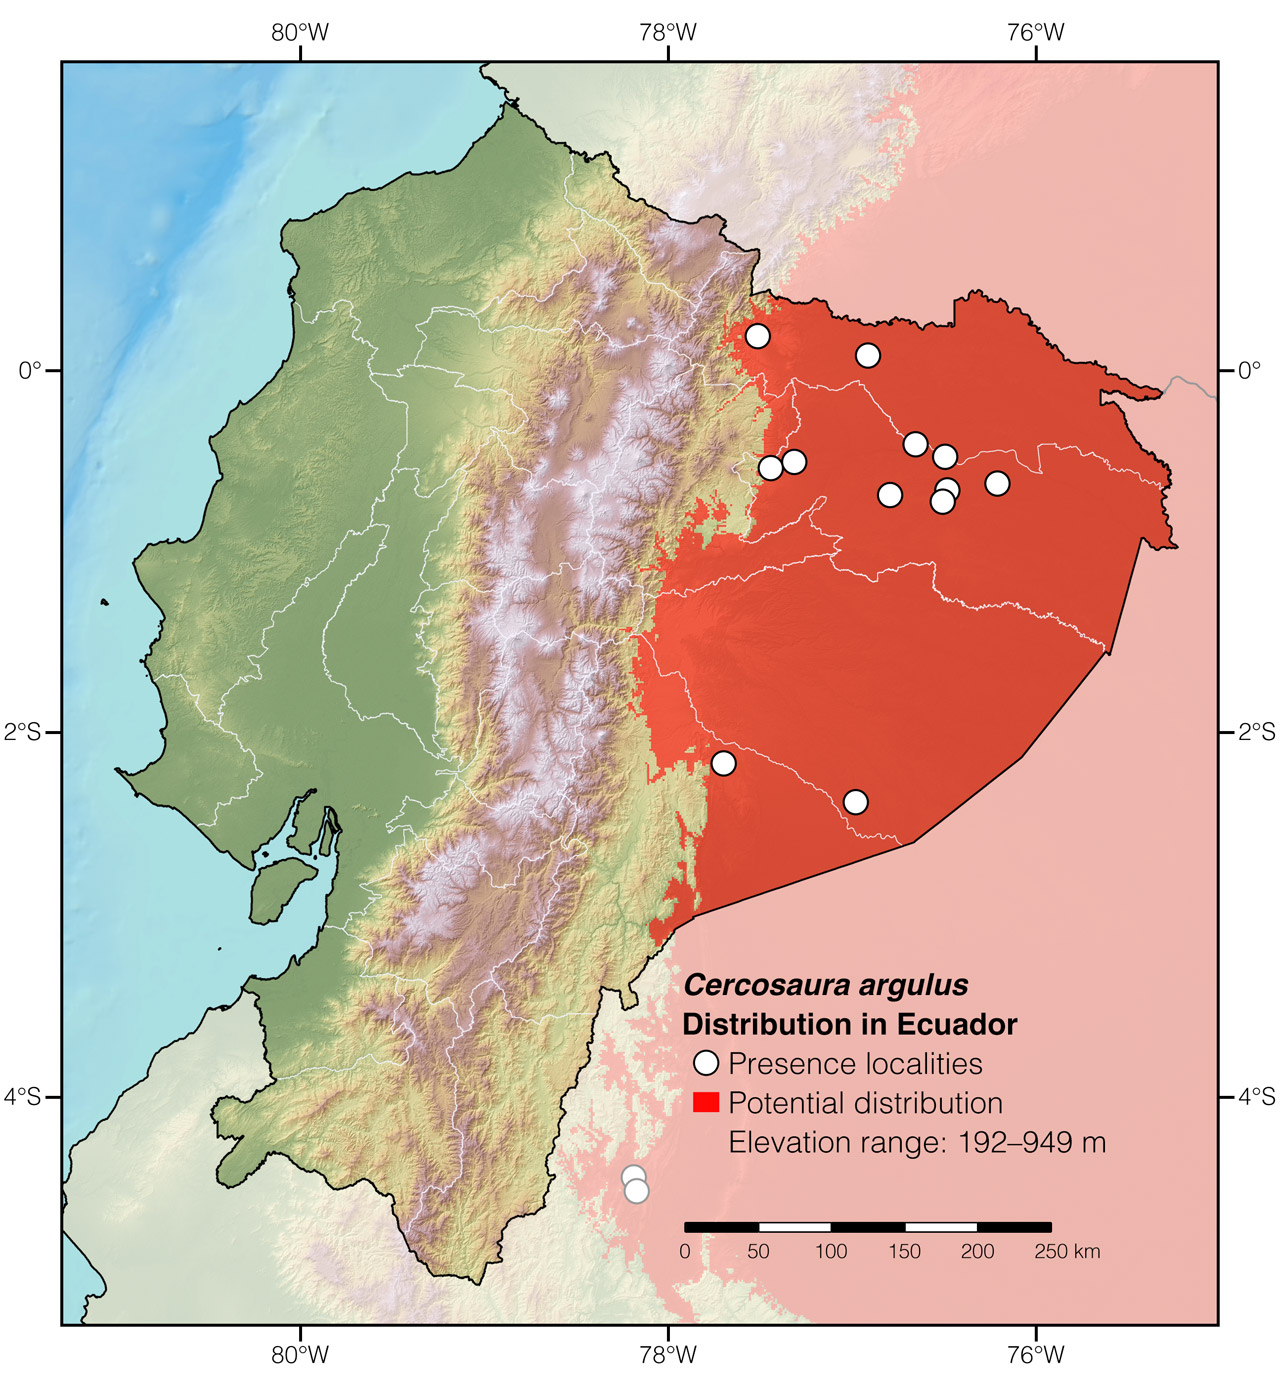 Distribution of Cercosaura argulus in Ecuador